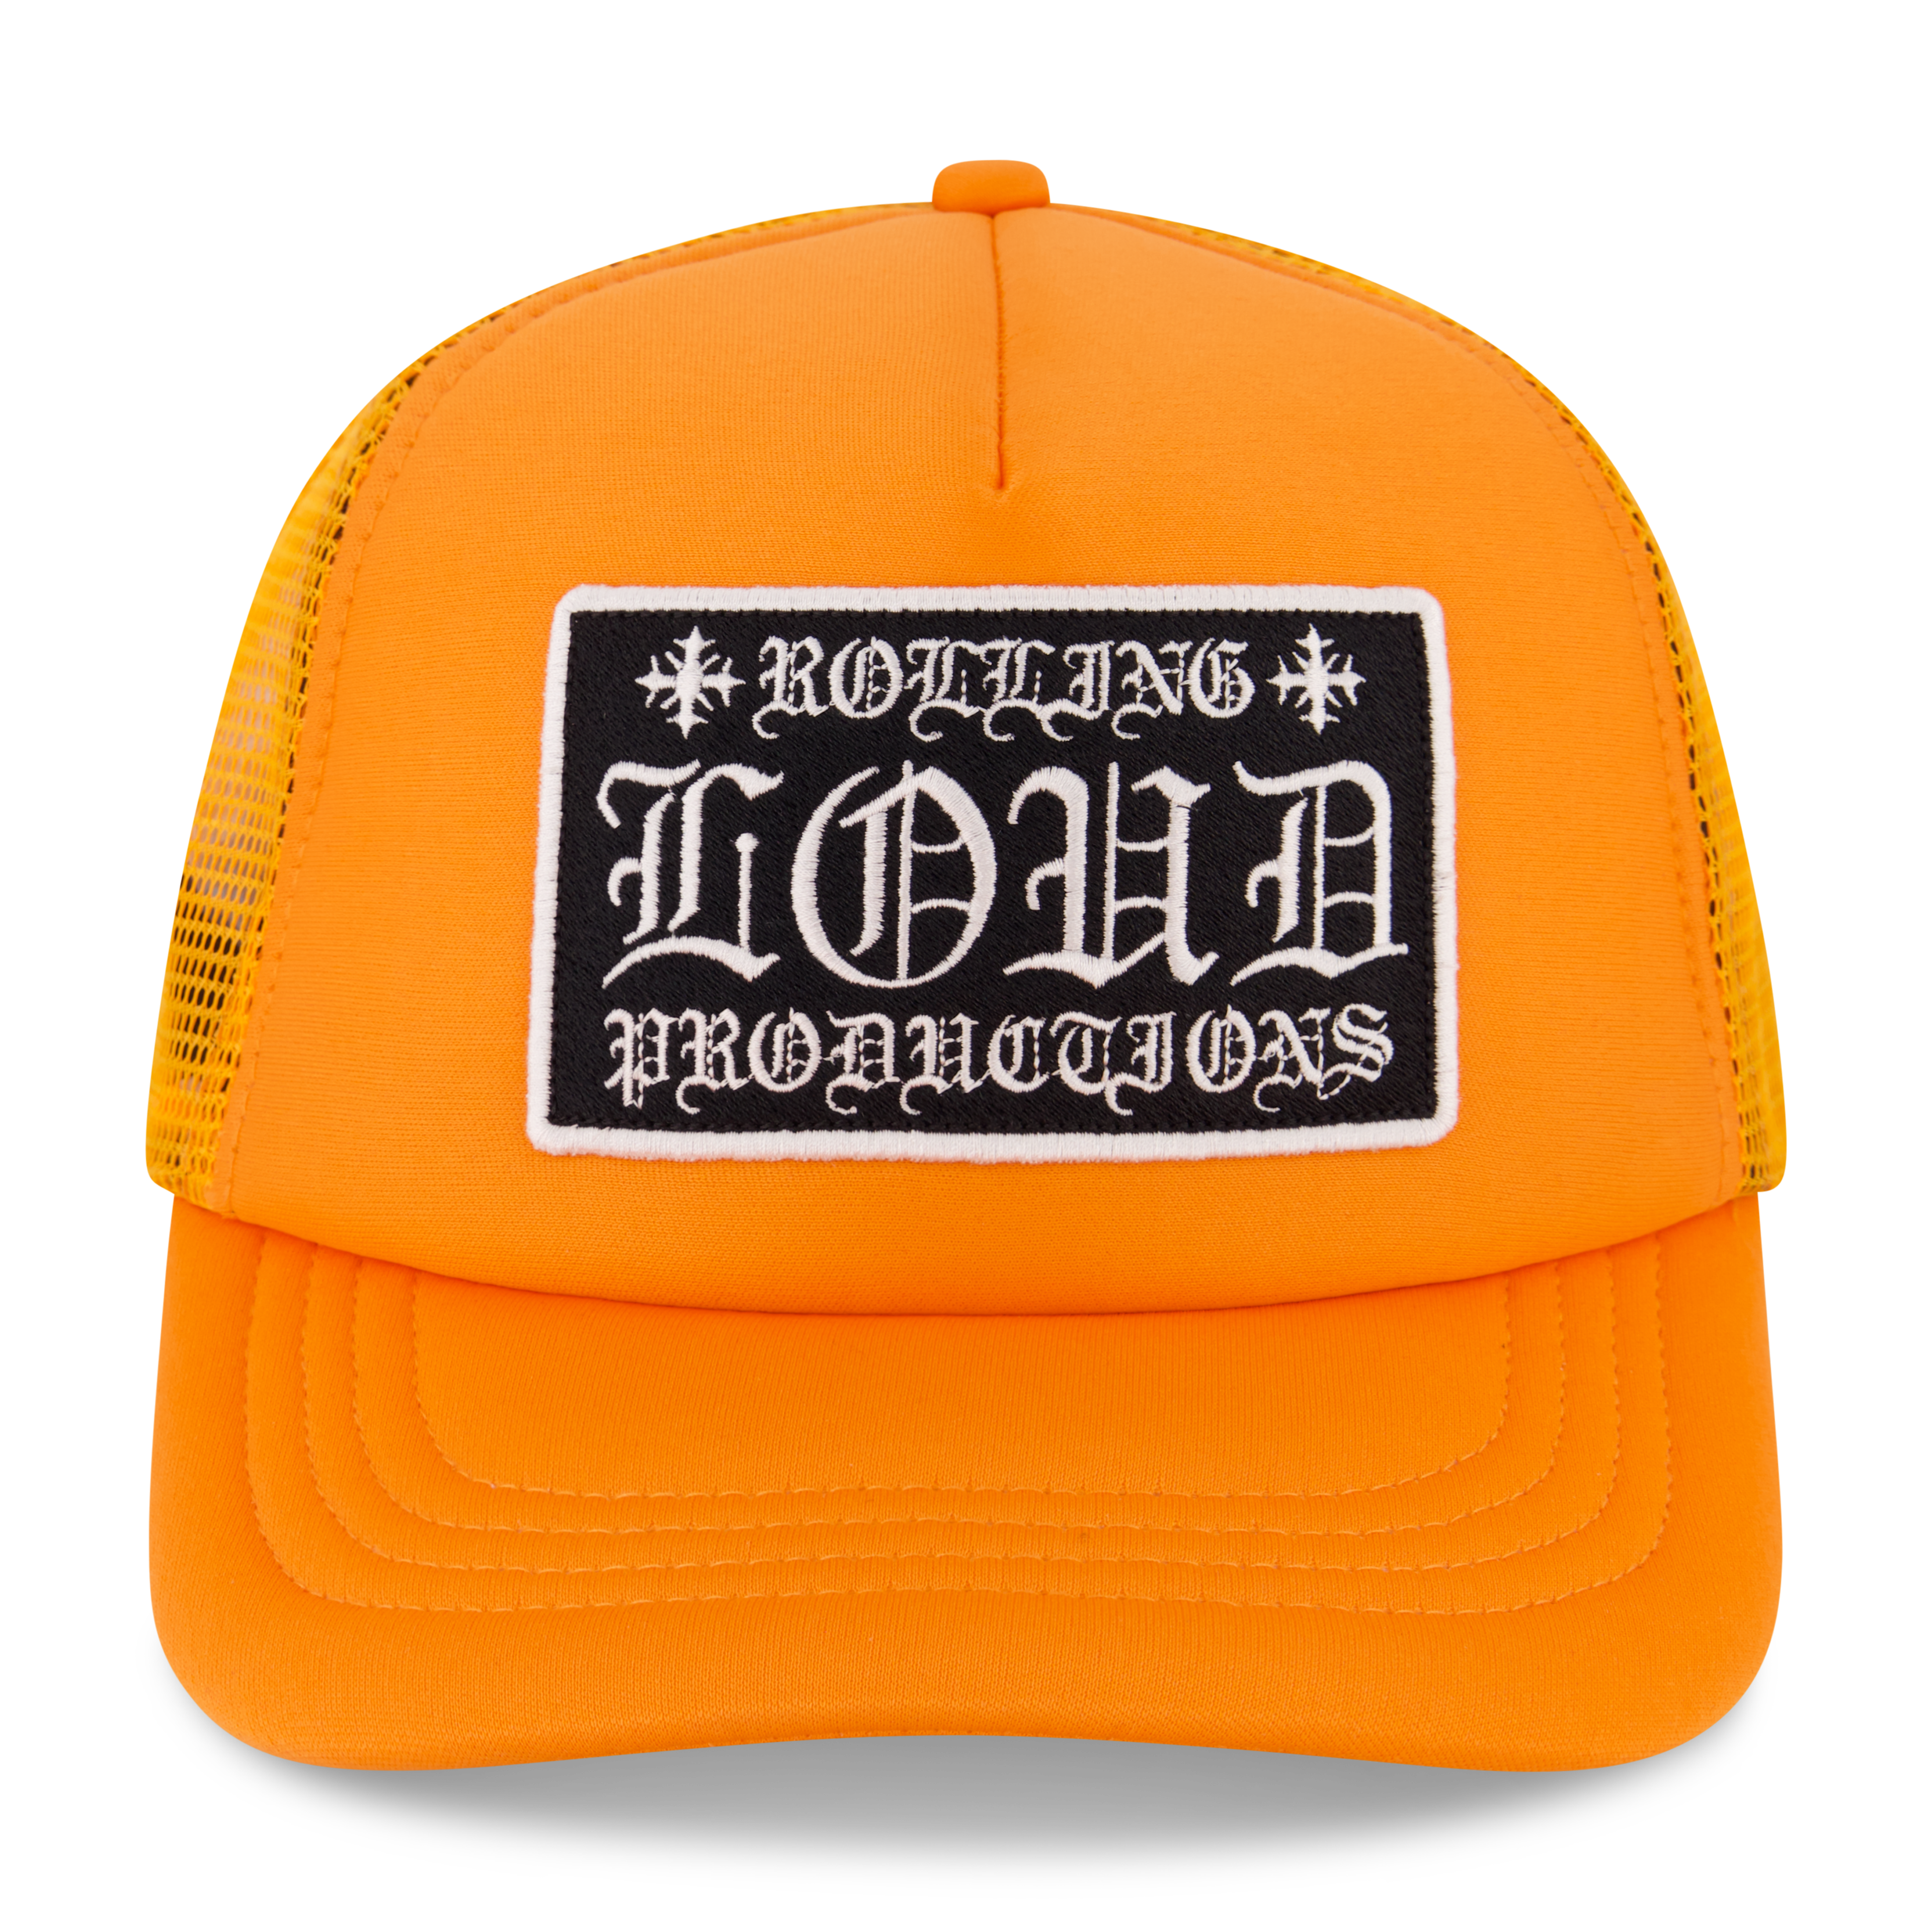 Alternate View 1 of Loud Hearts Orange Trucker Hat